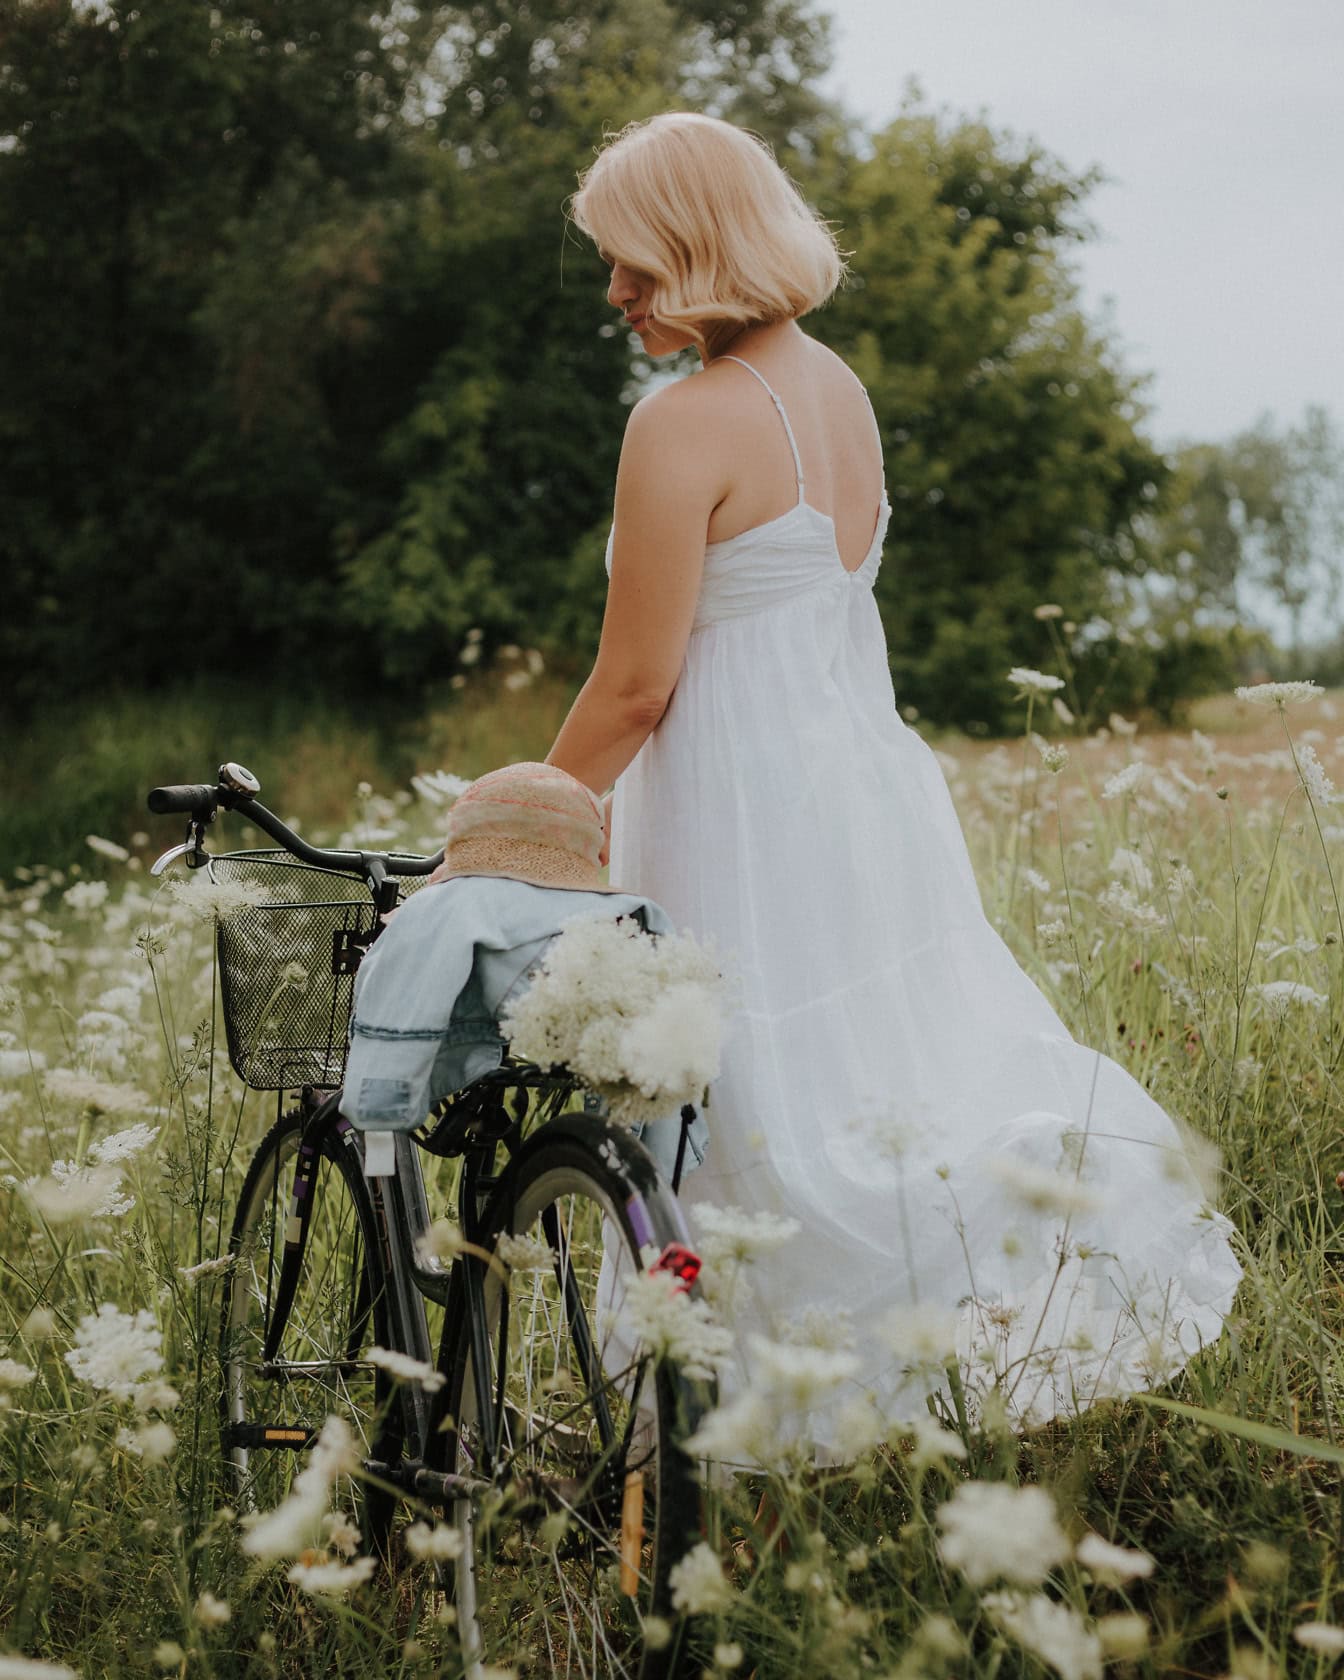 หญิงสาวโรแมนติกในชุดสีขาวบริสุทธิ์พร้อมหมวกบนจักรยานของเธอในทุ่งดอกไม้